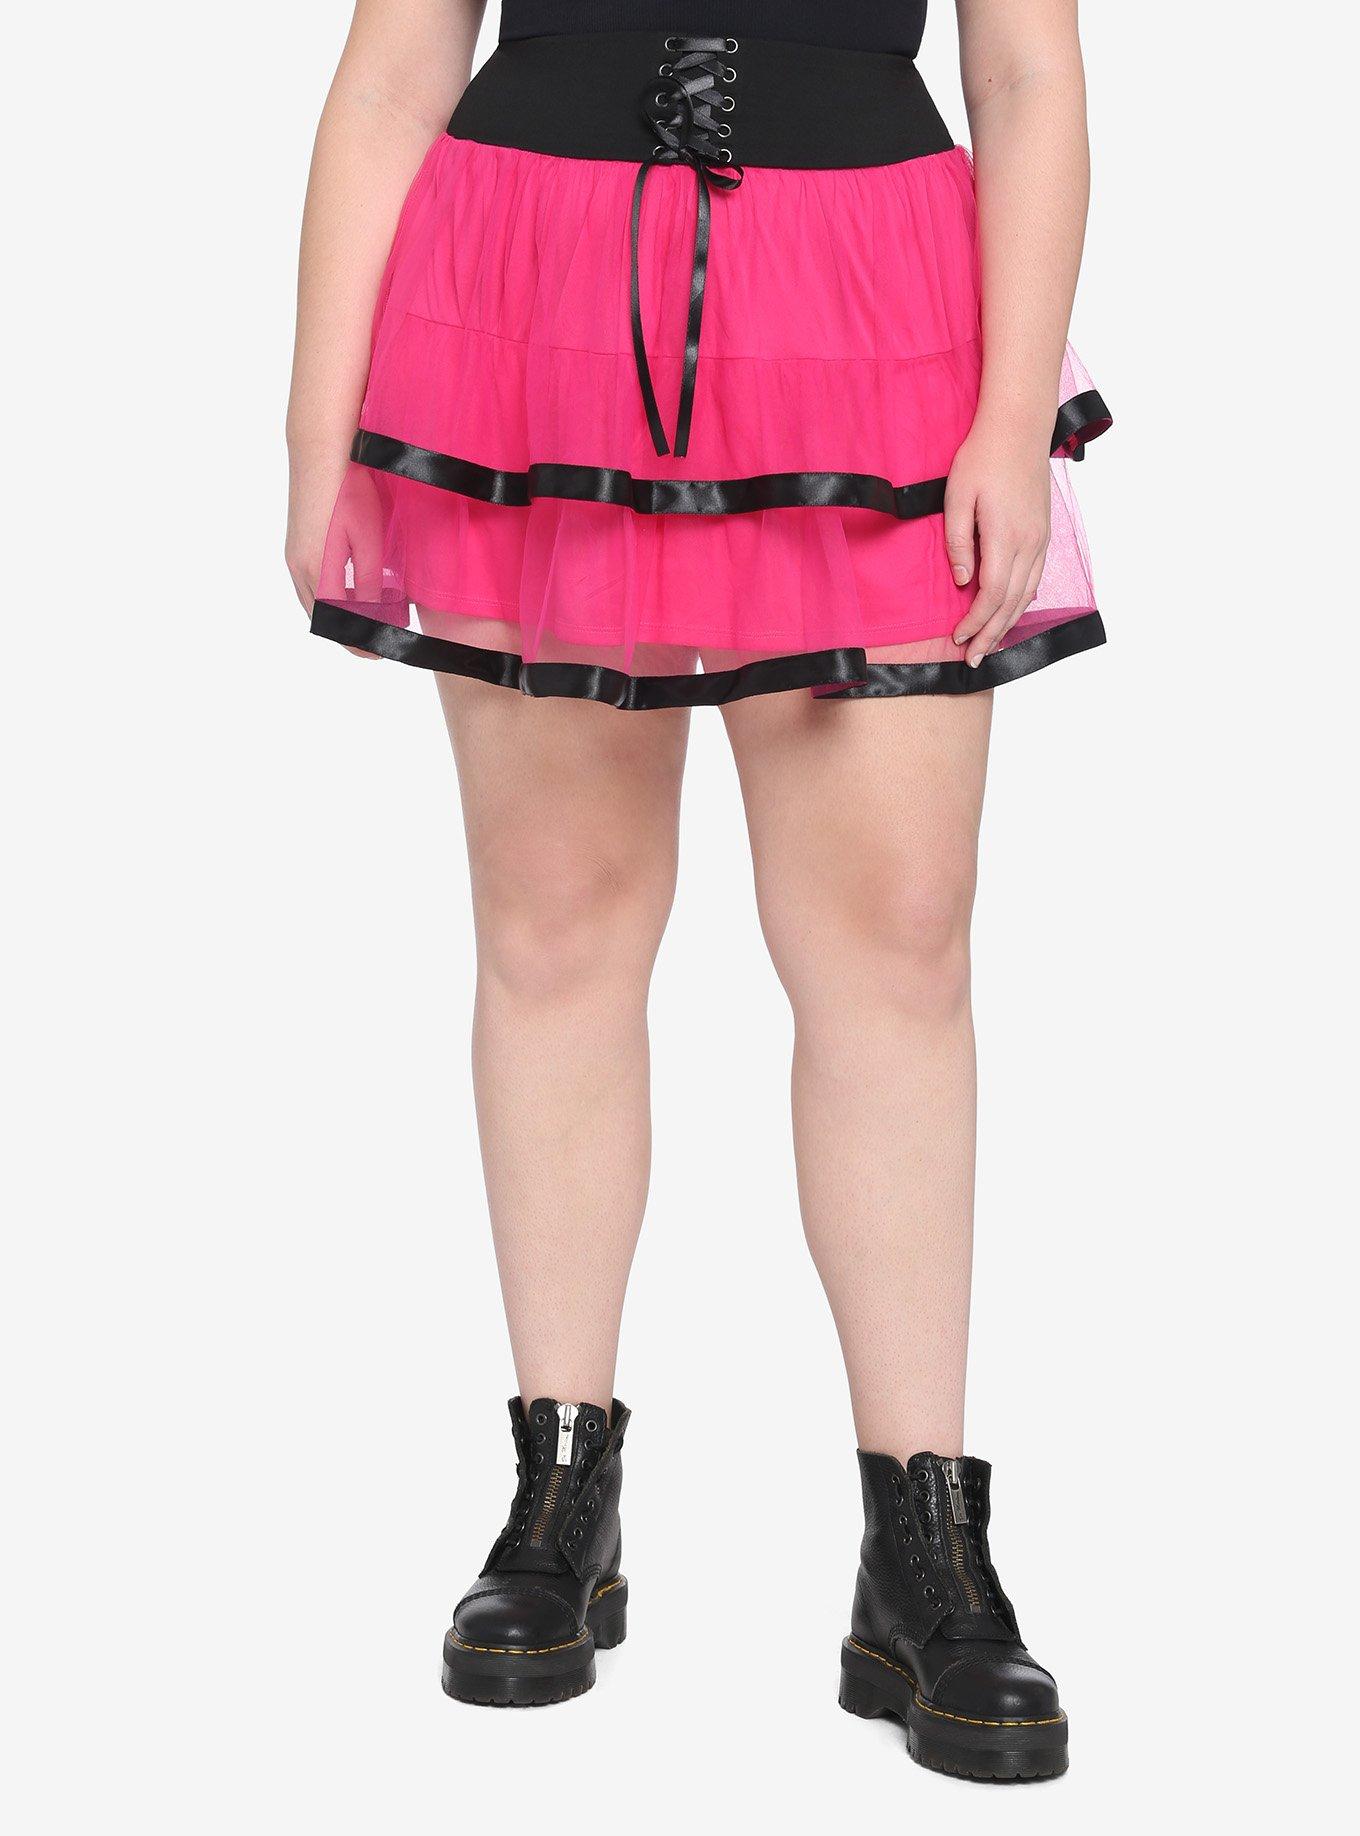 Hot Pink & Black Tutu Skirt Plus Size, PINK, hi-res